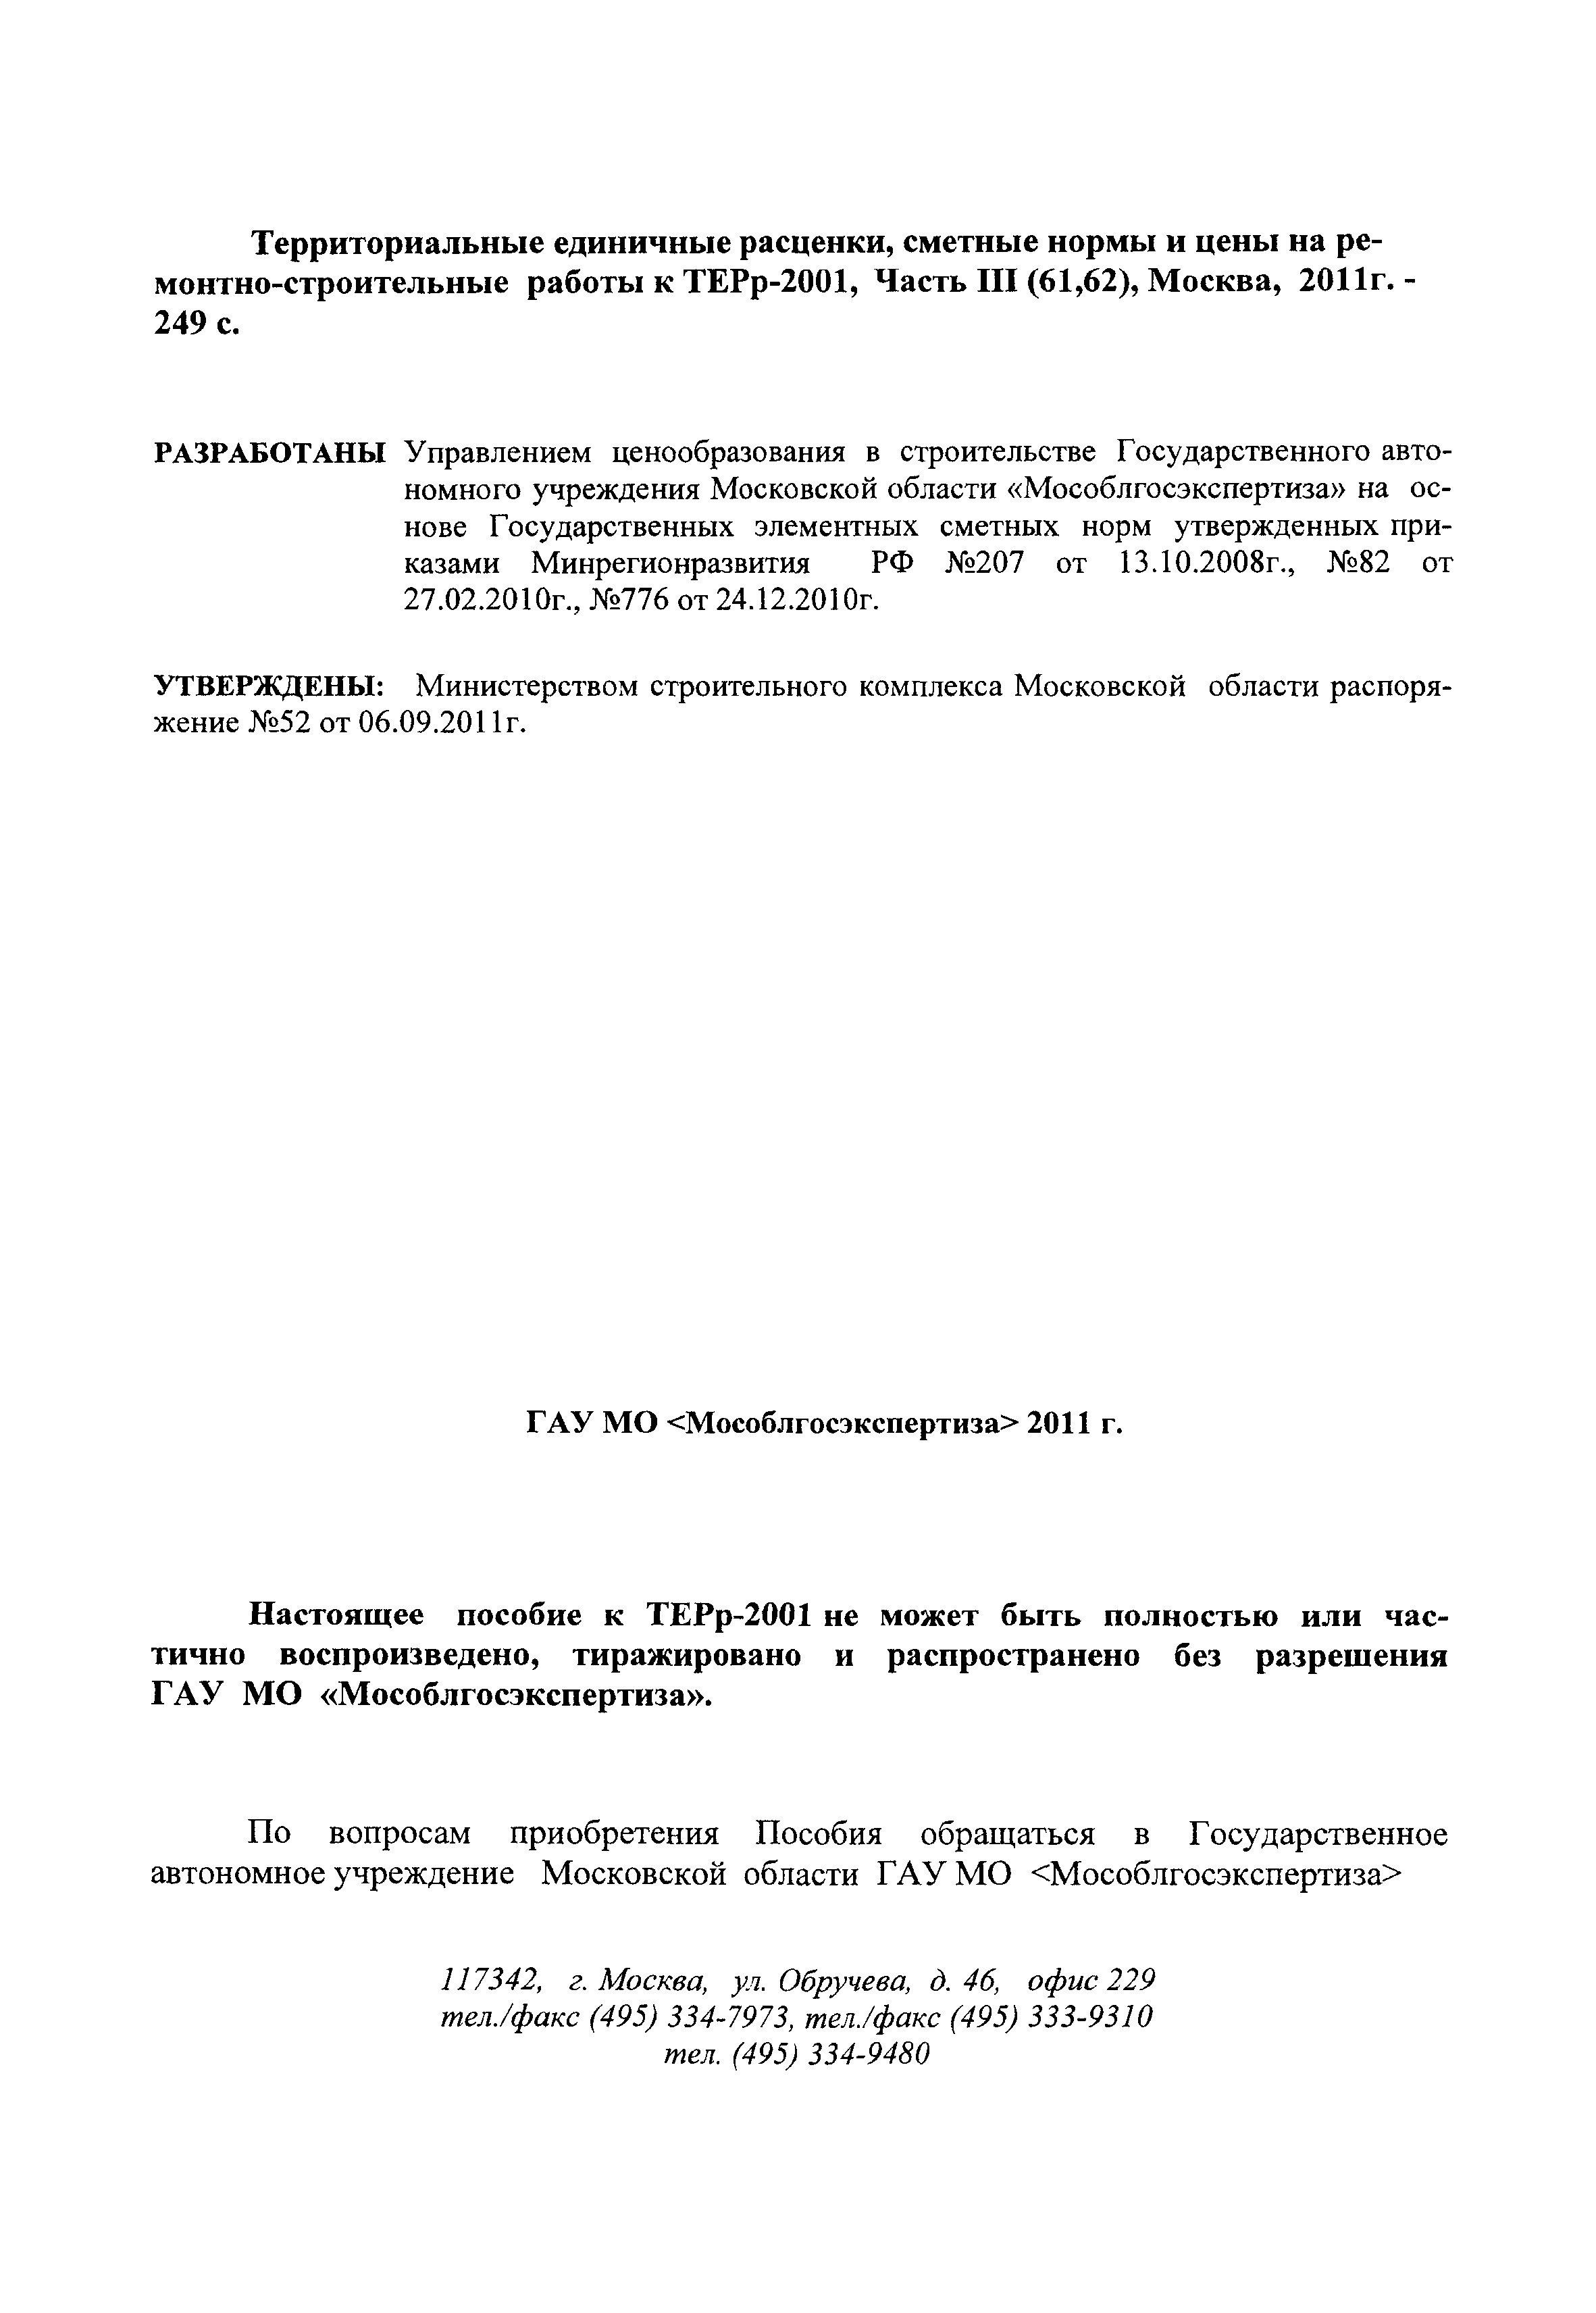 ГЭСНПиТЕРр 2001-62 Московской области